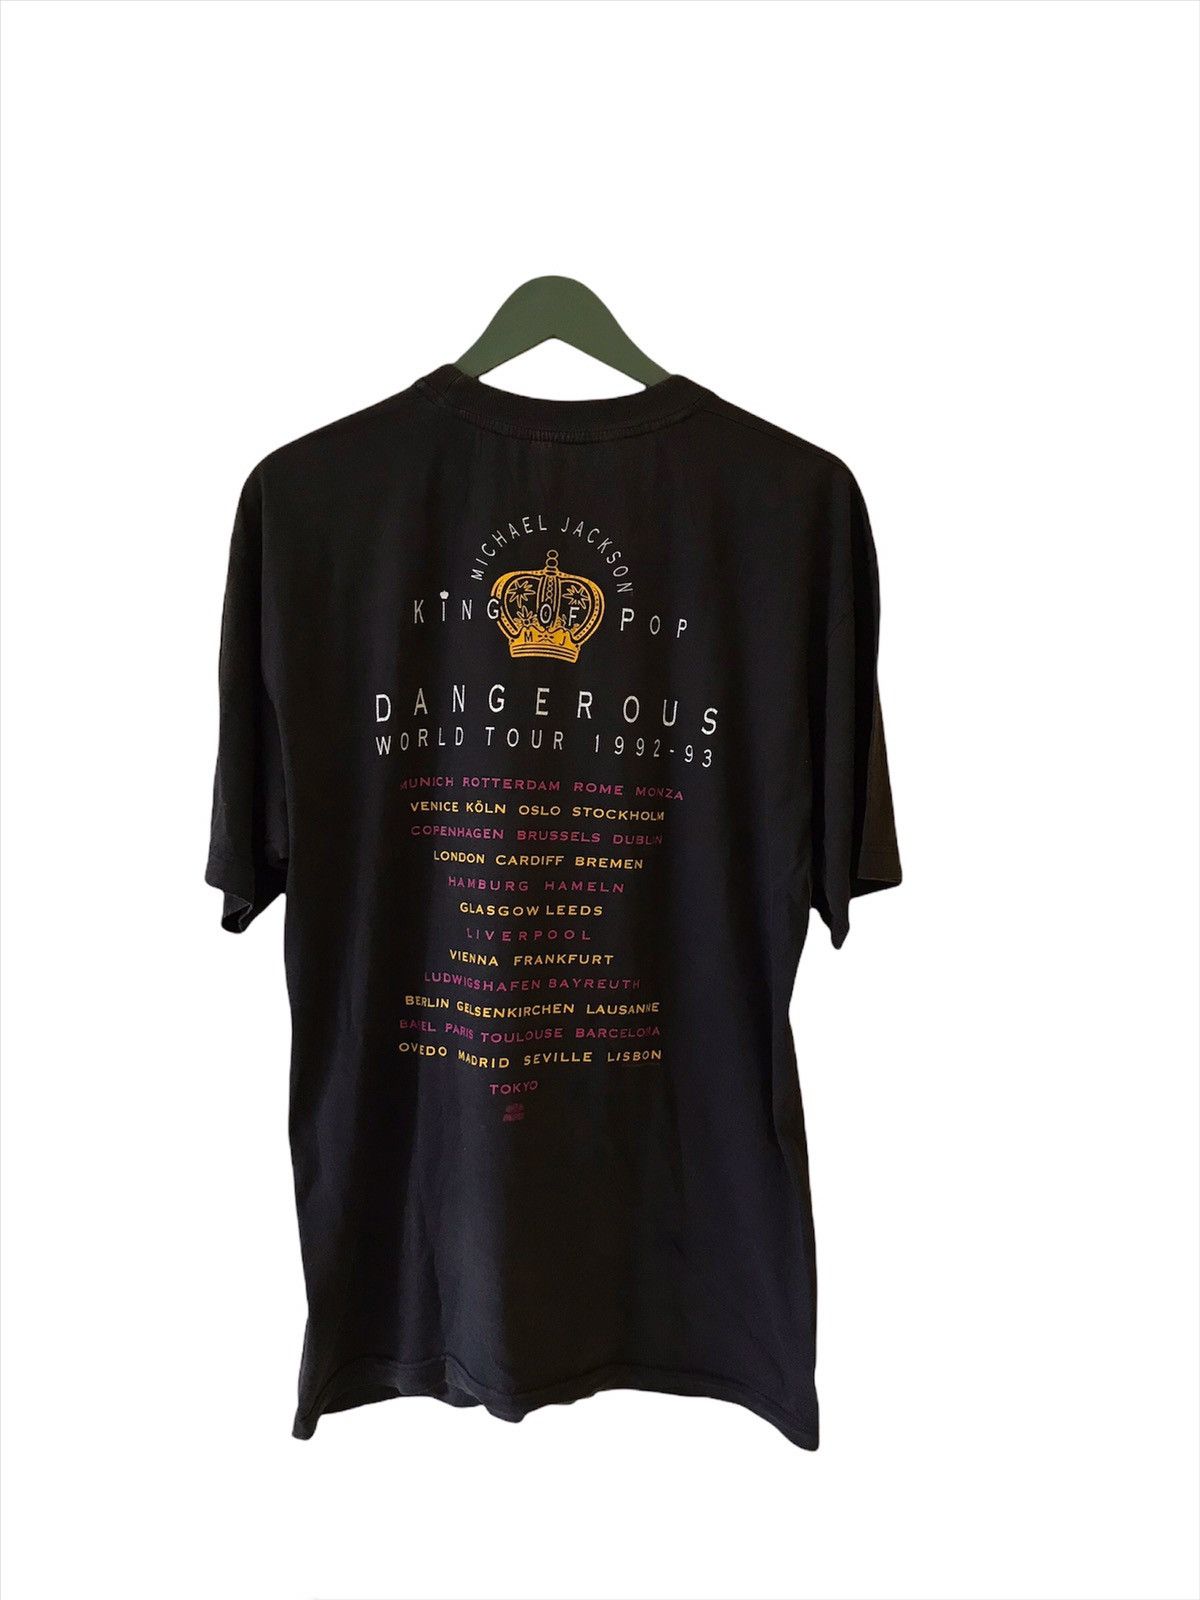 マイケルジャクソン 1992 1993 デンジャラス ワールド ツアー Tシャツ